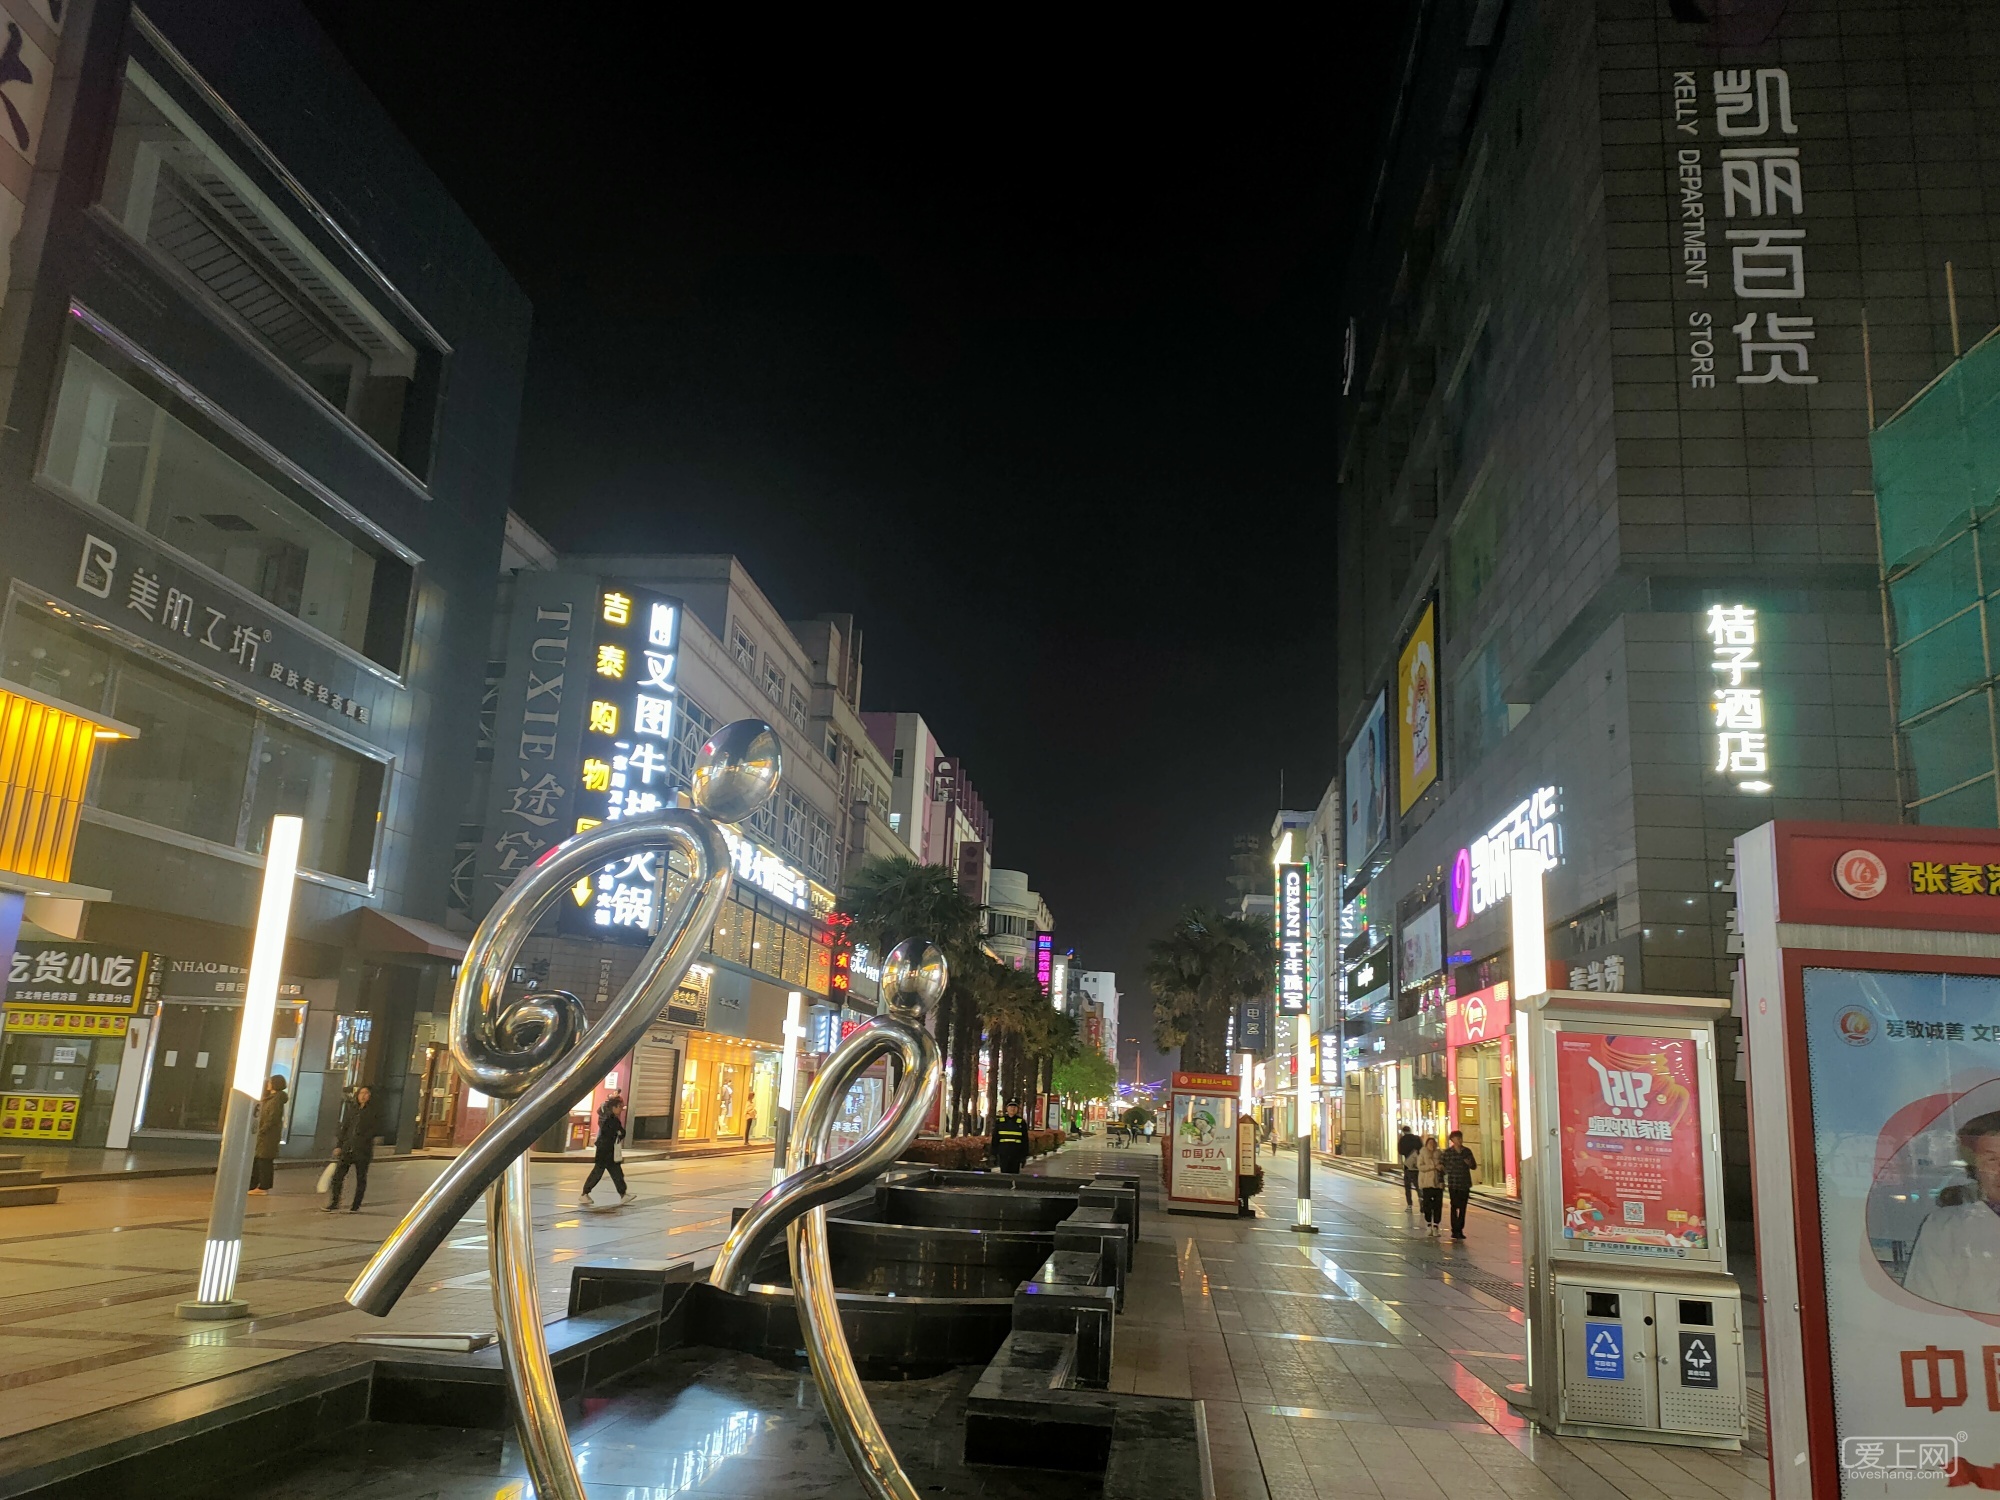 夜幕下的杨舍老街，灯火通明、夜色璀璨，港城夜生活幸福而又精彩